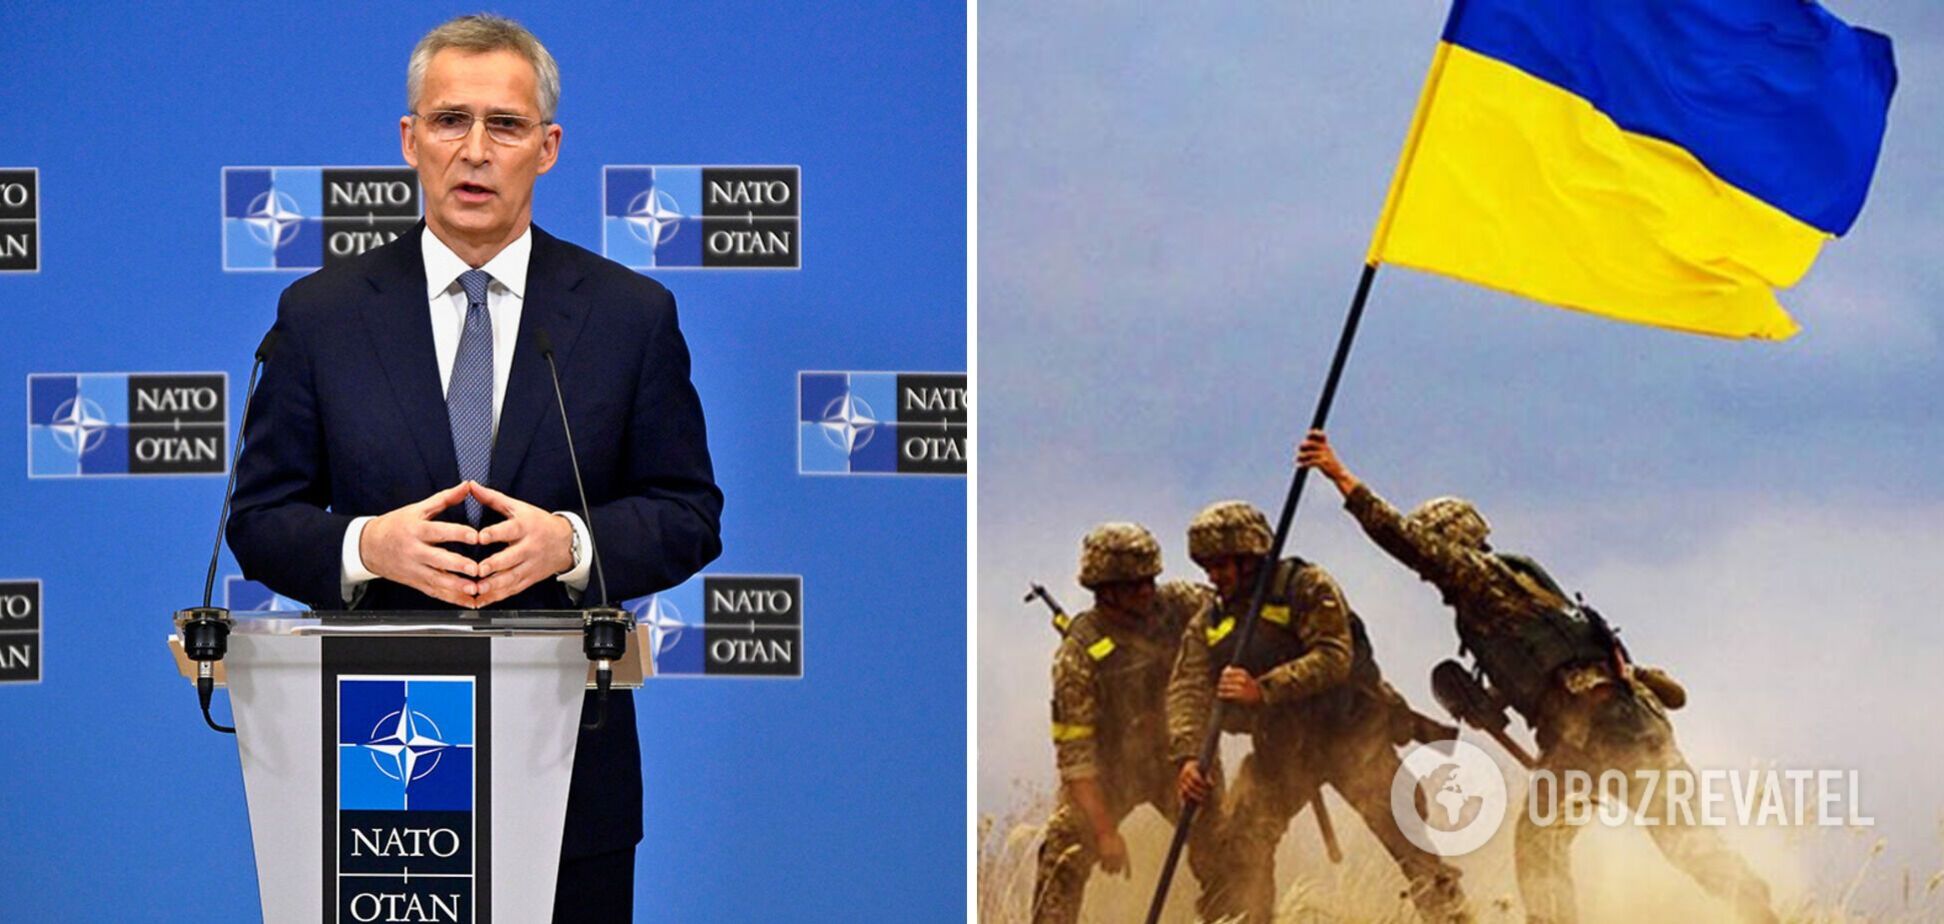 Политику и военную целесообразность в Украине следует разделять, как в НАТО